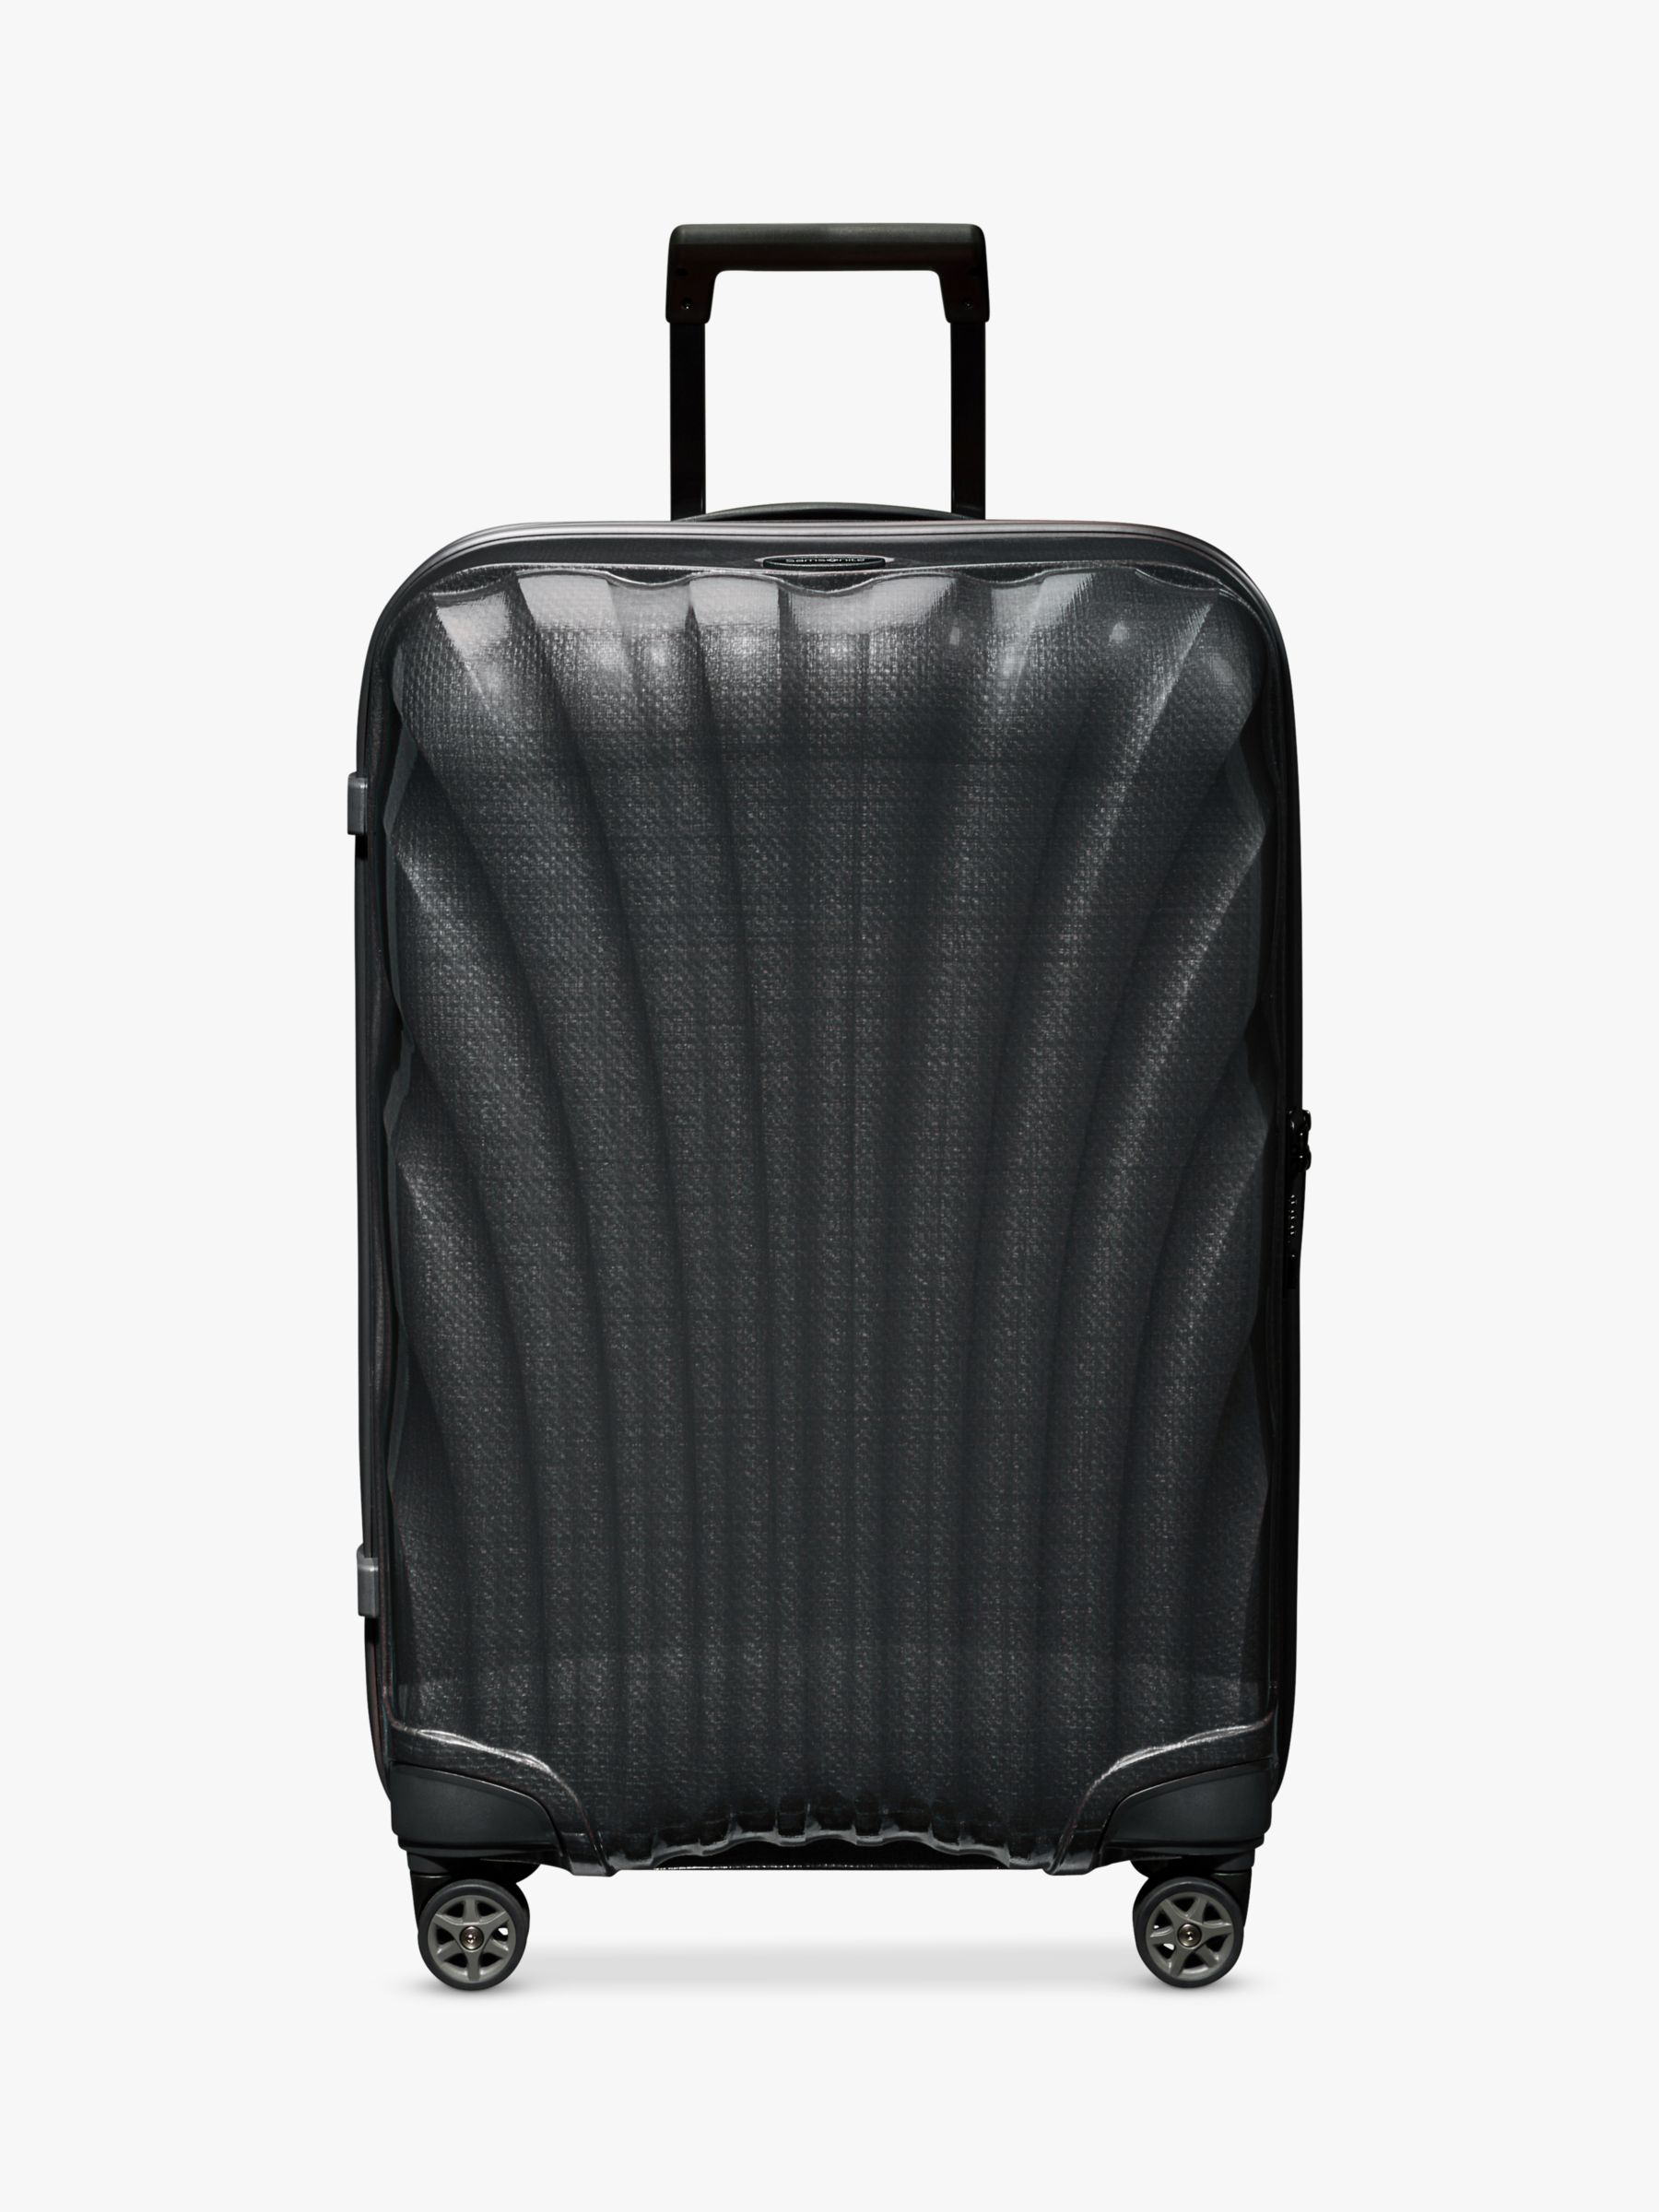 Samsonite C-Lite 4-Wheel 69cm Medium Suitcase, Black